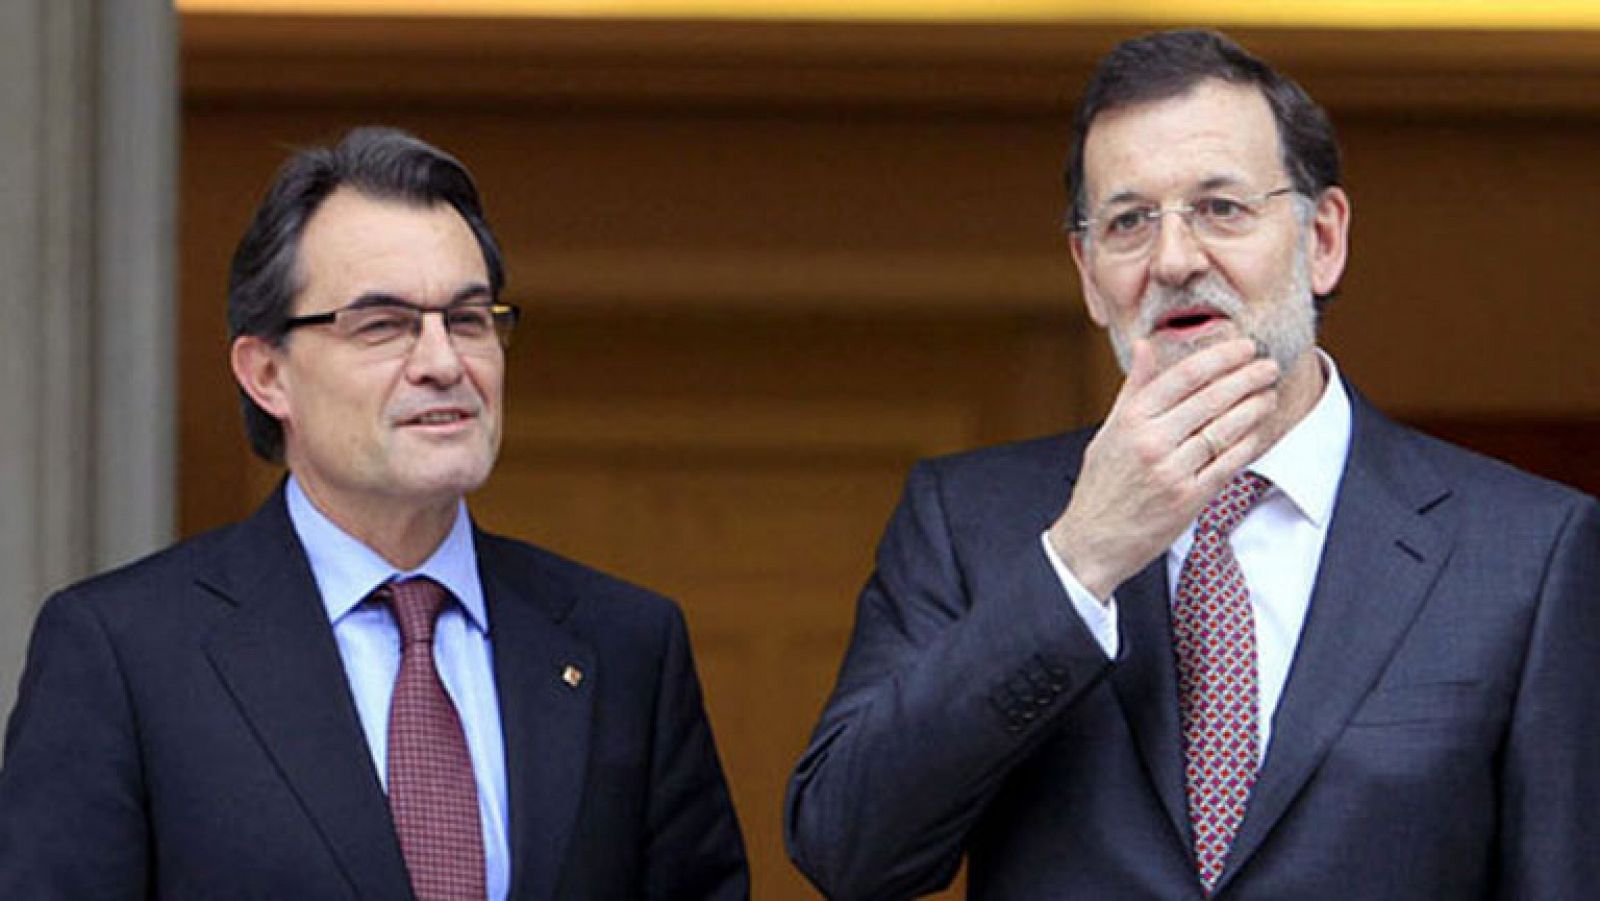 Reunión secreta entre Rajoy y Mas 